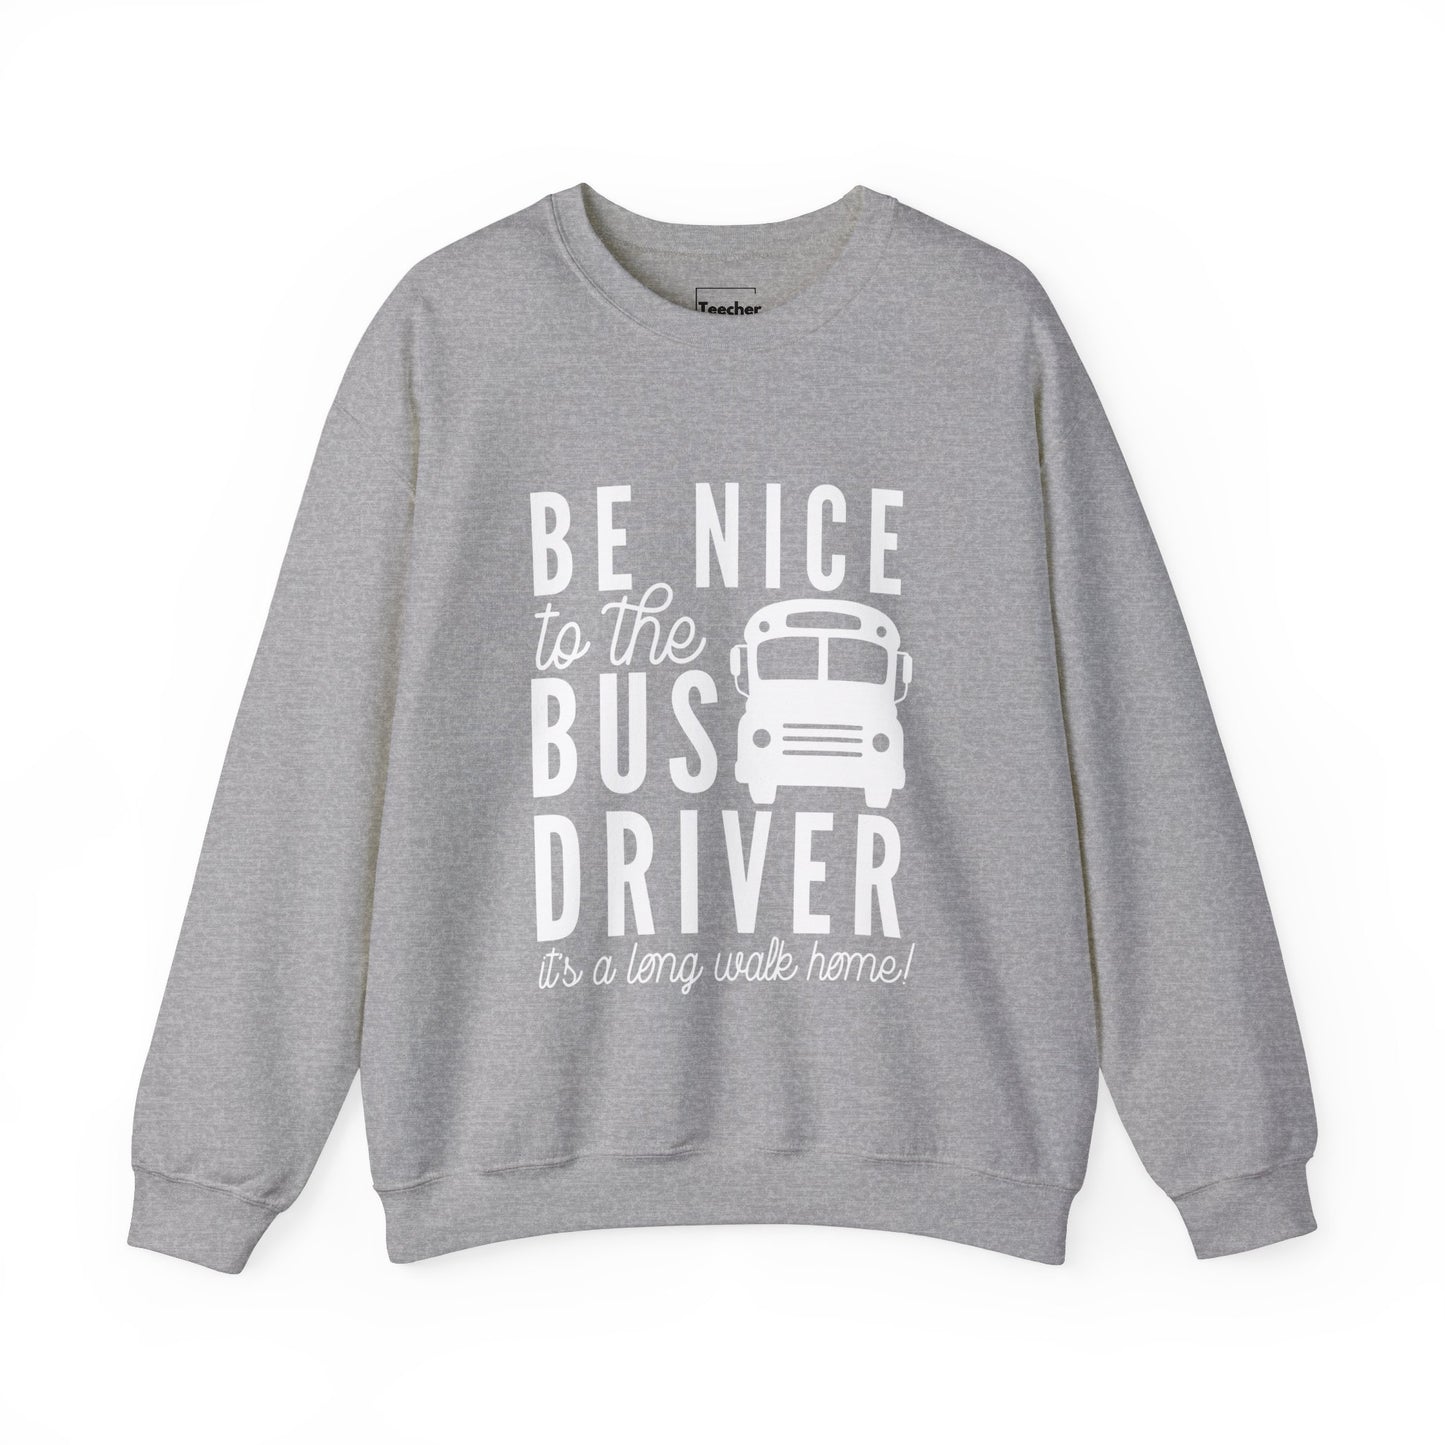 Be Nice Sweatshirt